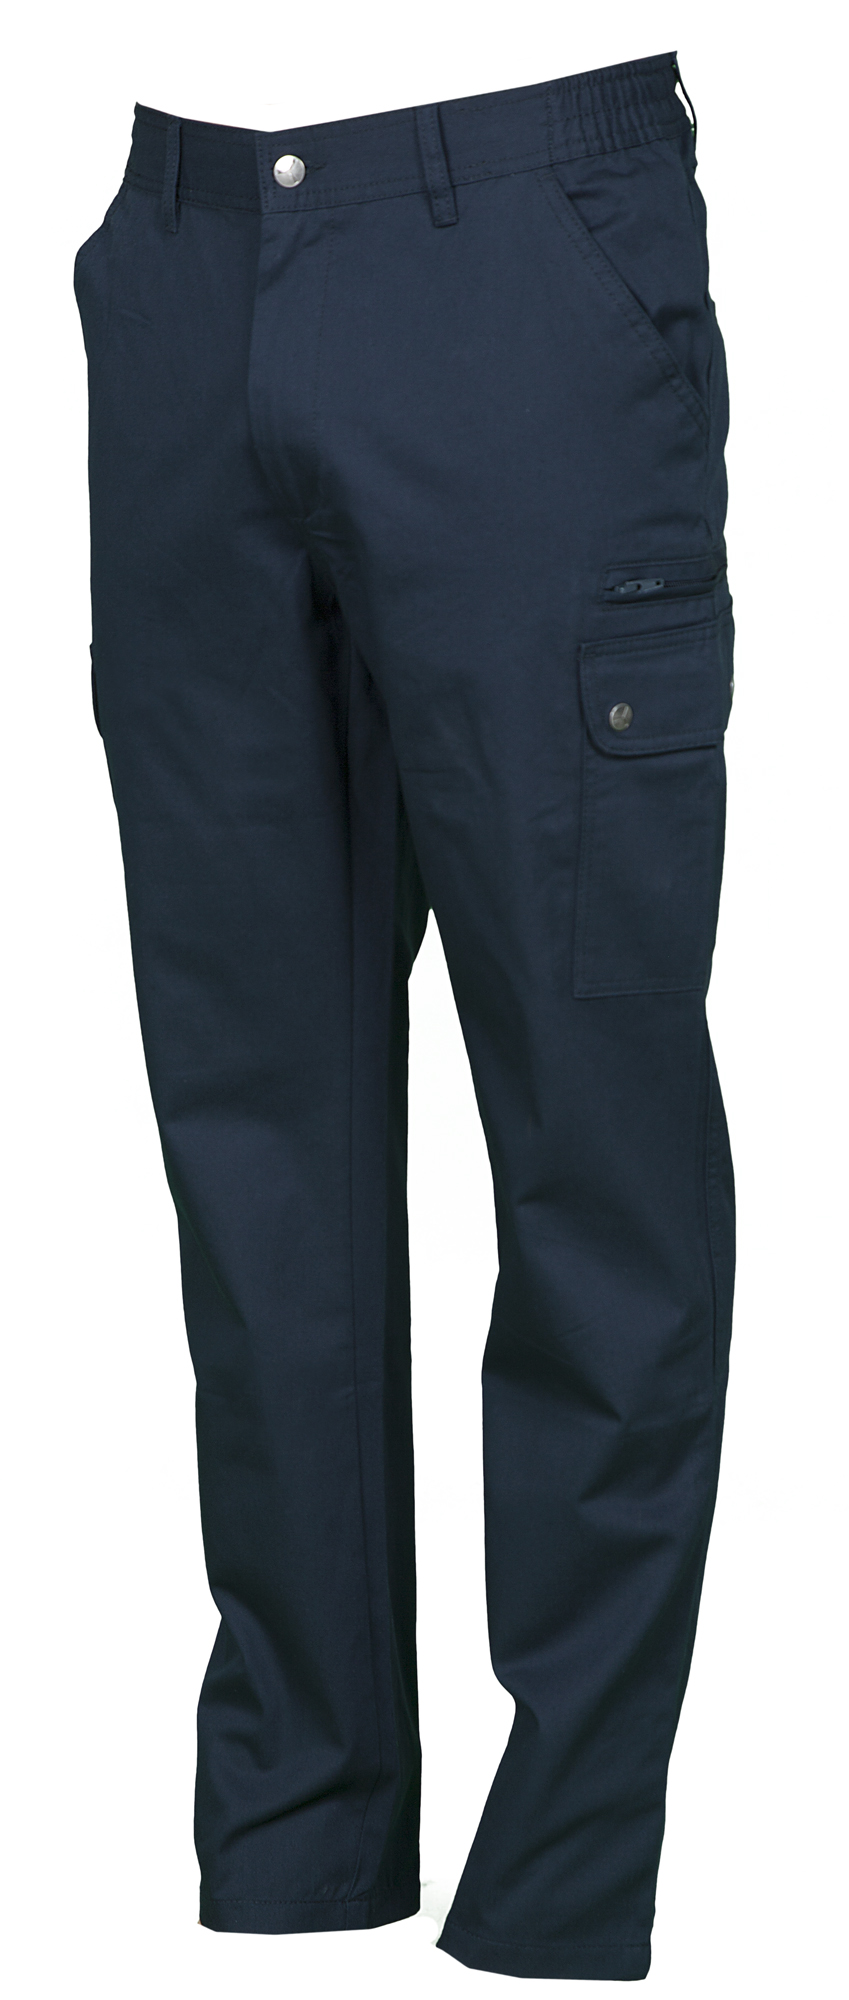 PAYPER Forest Pantalone da Uomo multistagione Lavoro con Tasche Laterali Anteriori Posteriori Chiusura Zip 100/% Cotone